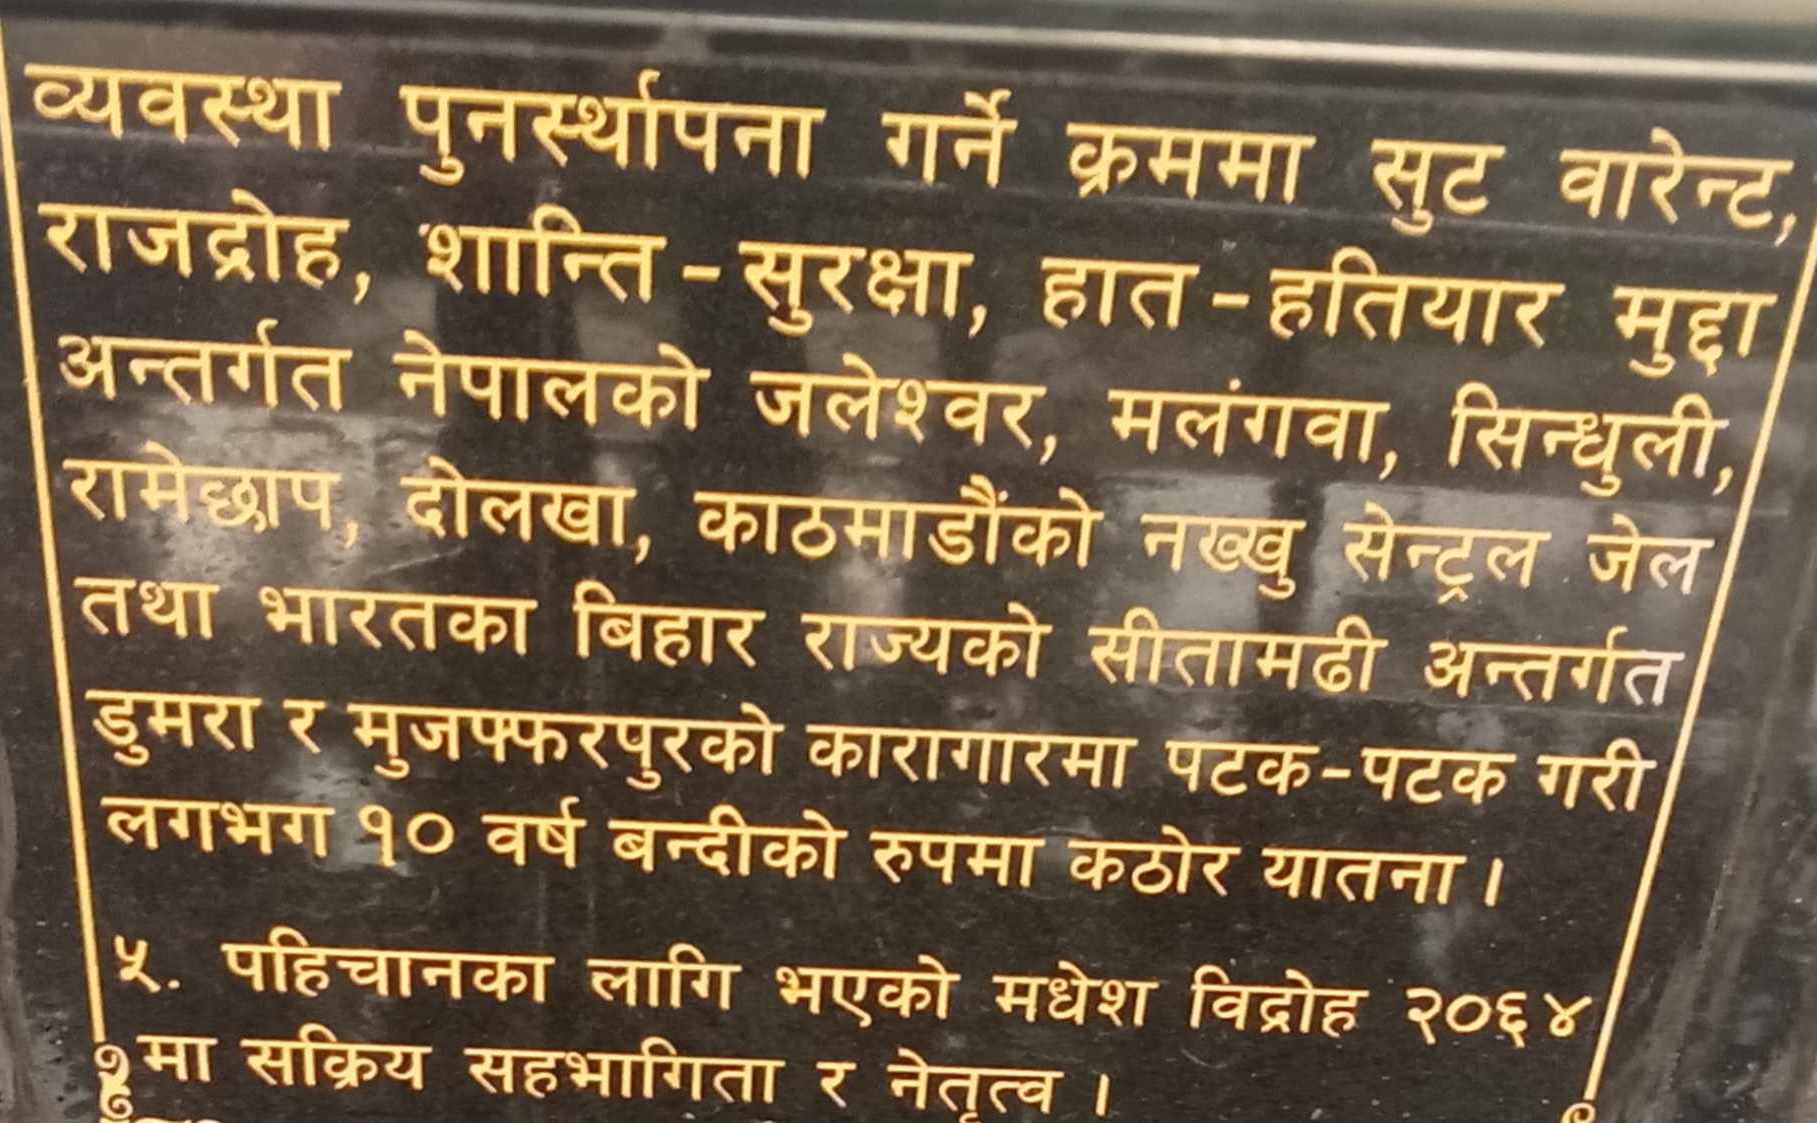 Shalik Muni Sametieko Ganesh Nepali Ko Parichay-41690345923.jpg